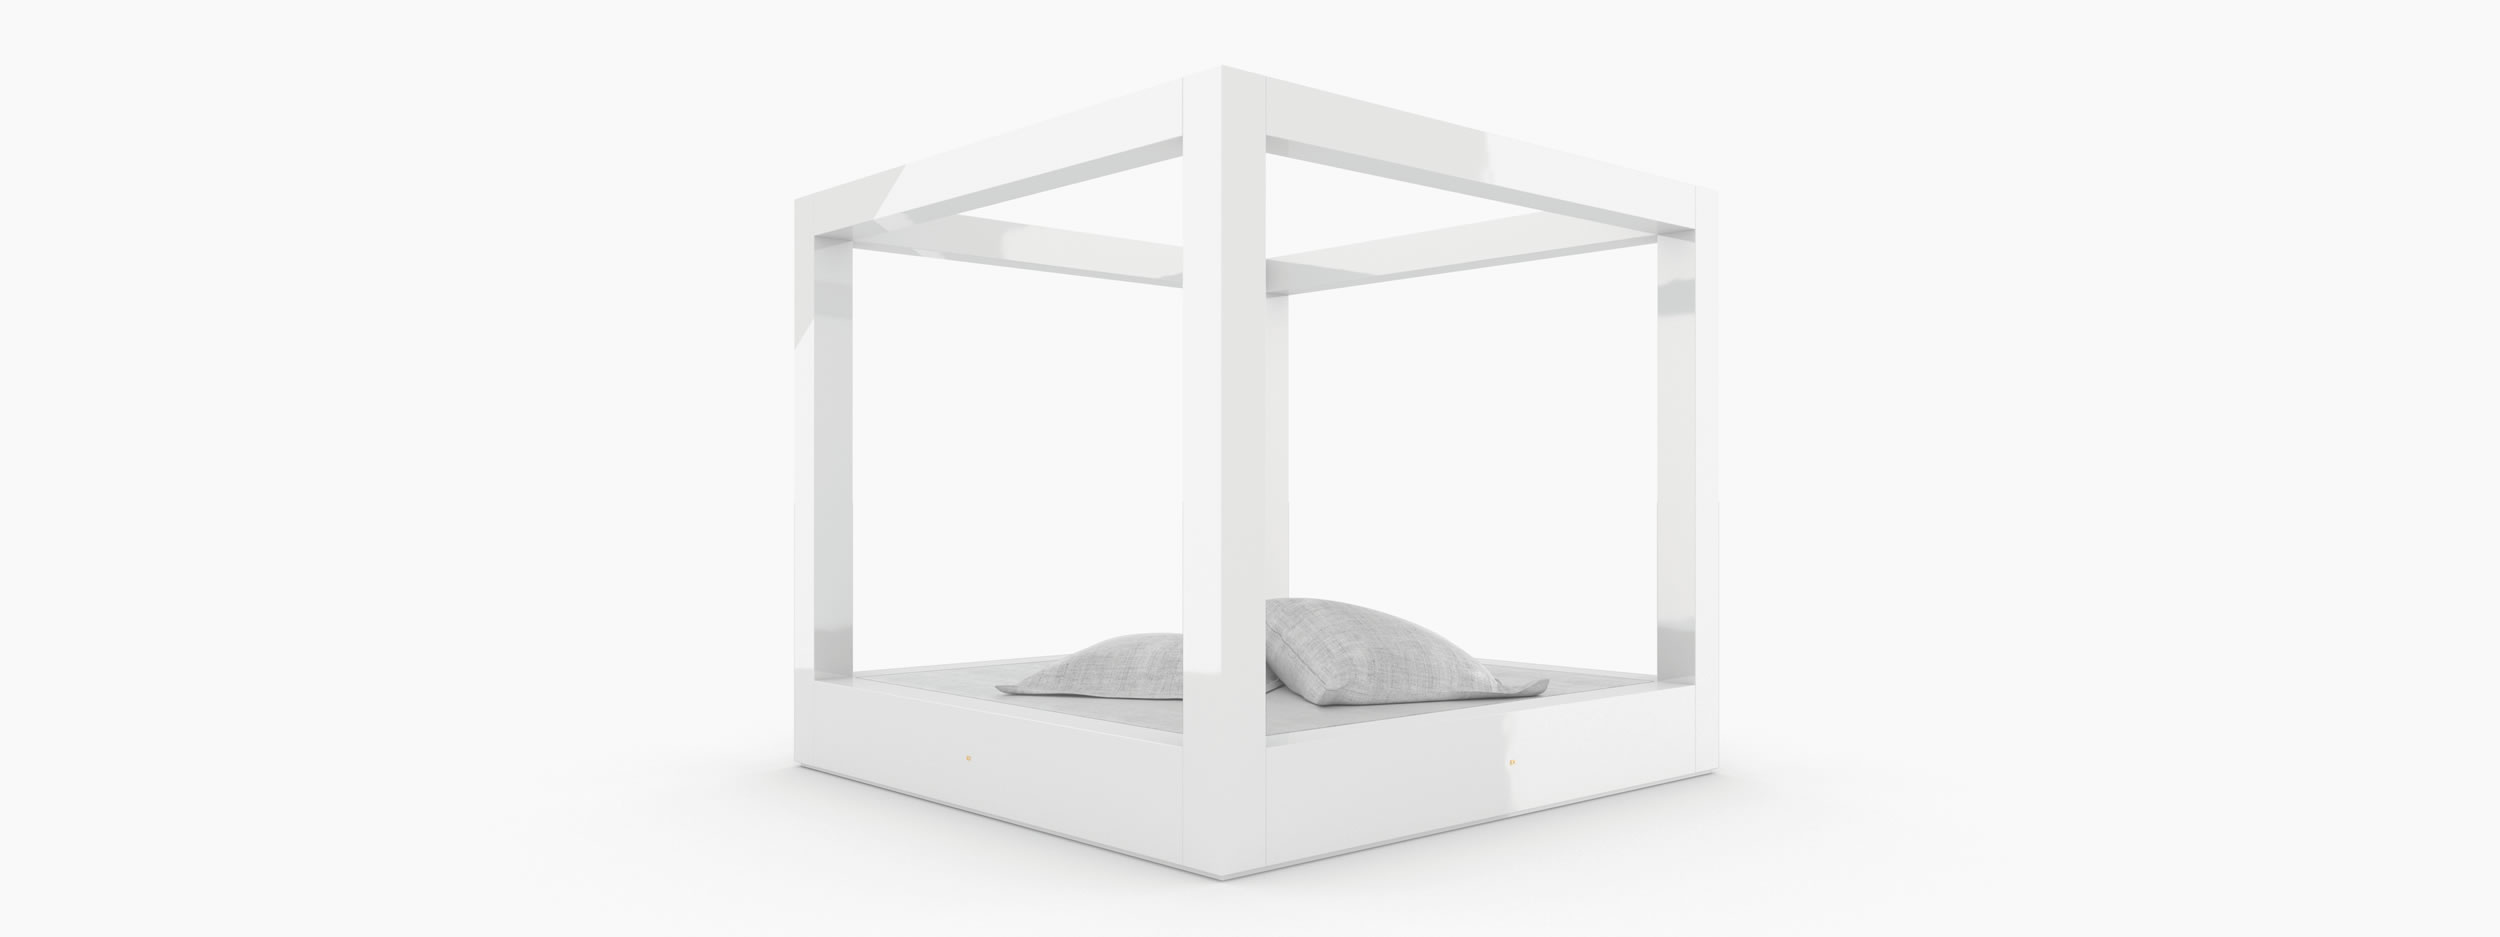 Himmelbett freistehend weiss bed room Schlafzimmer minimalist design Himmelbett FS 15 FELIX SCHWAKE RECHTECK